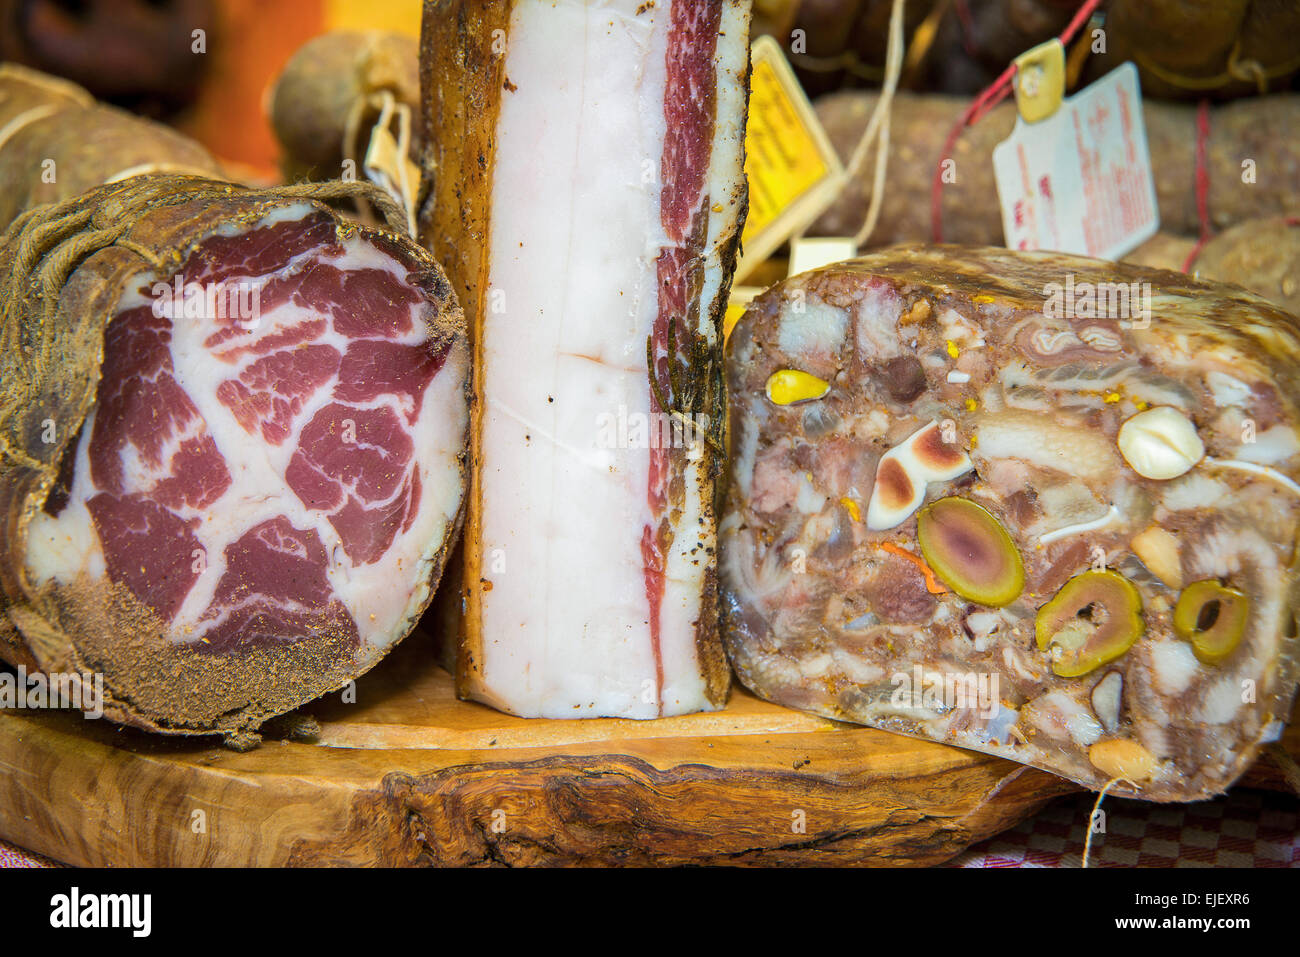 Marche, Fermo, Marche Tipicità, typische 2015 Speisen stehen Land Schwein, Marche DOP Salumi, Coppa, Lonza und Speck. Stockfoto